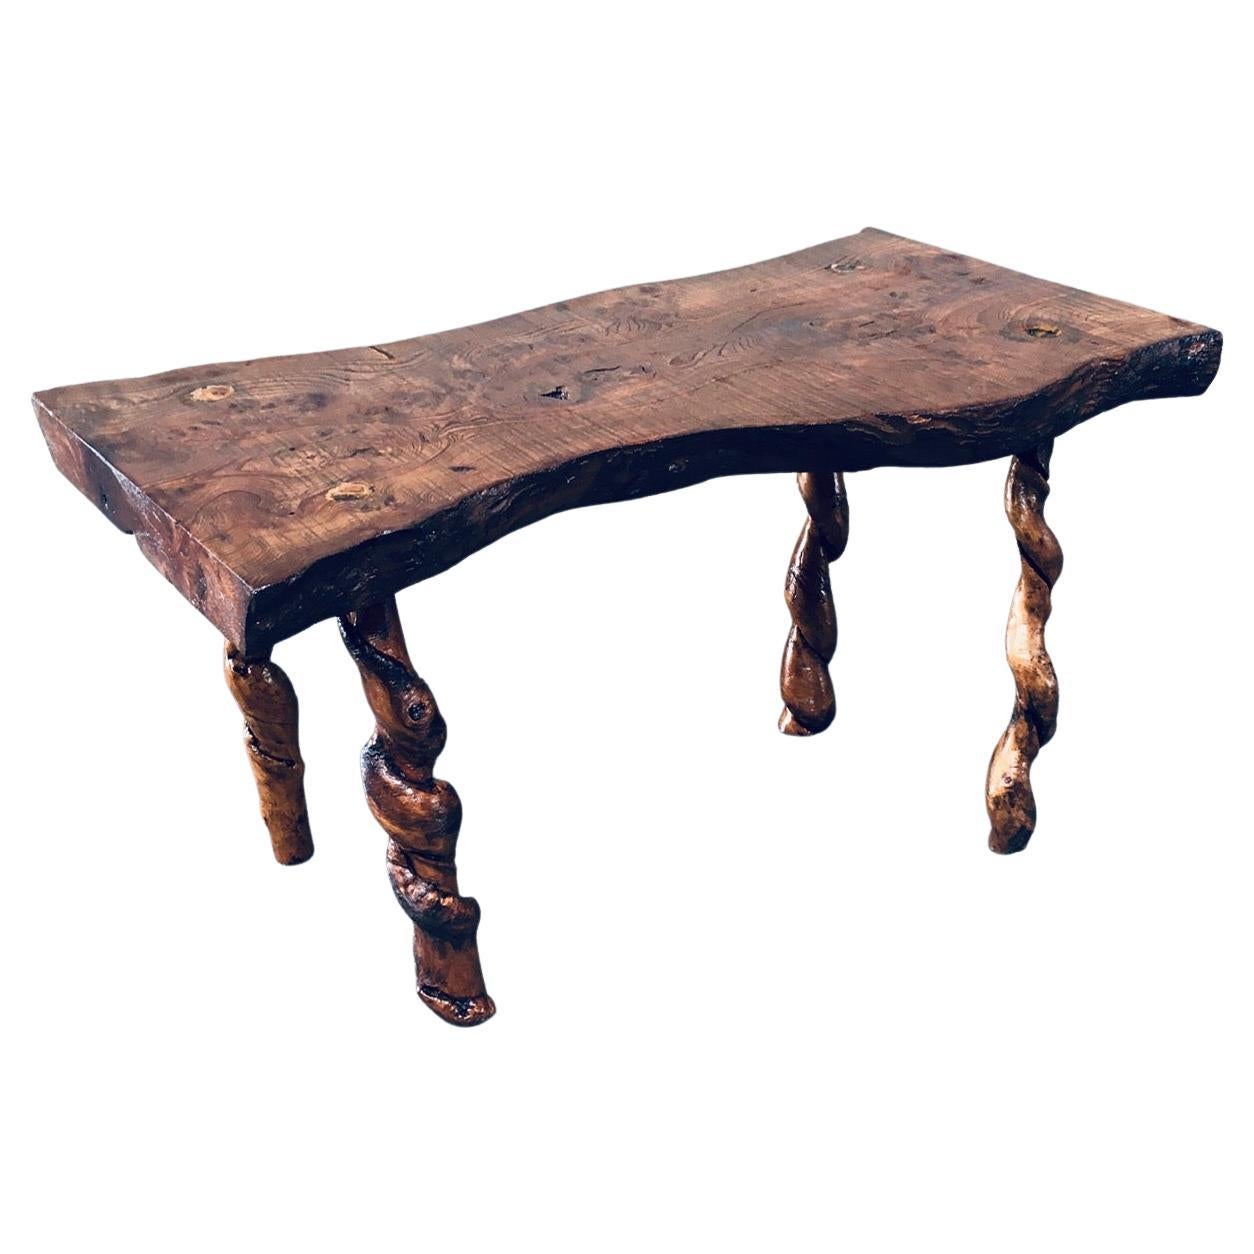 Table d'appoint en chêne et bois de raisin des années 1950, de style Wabi Sabi, fabriquée à la main